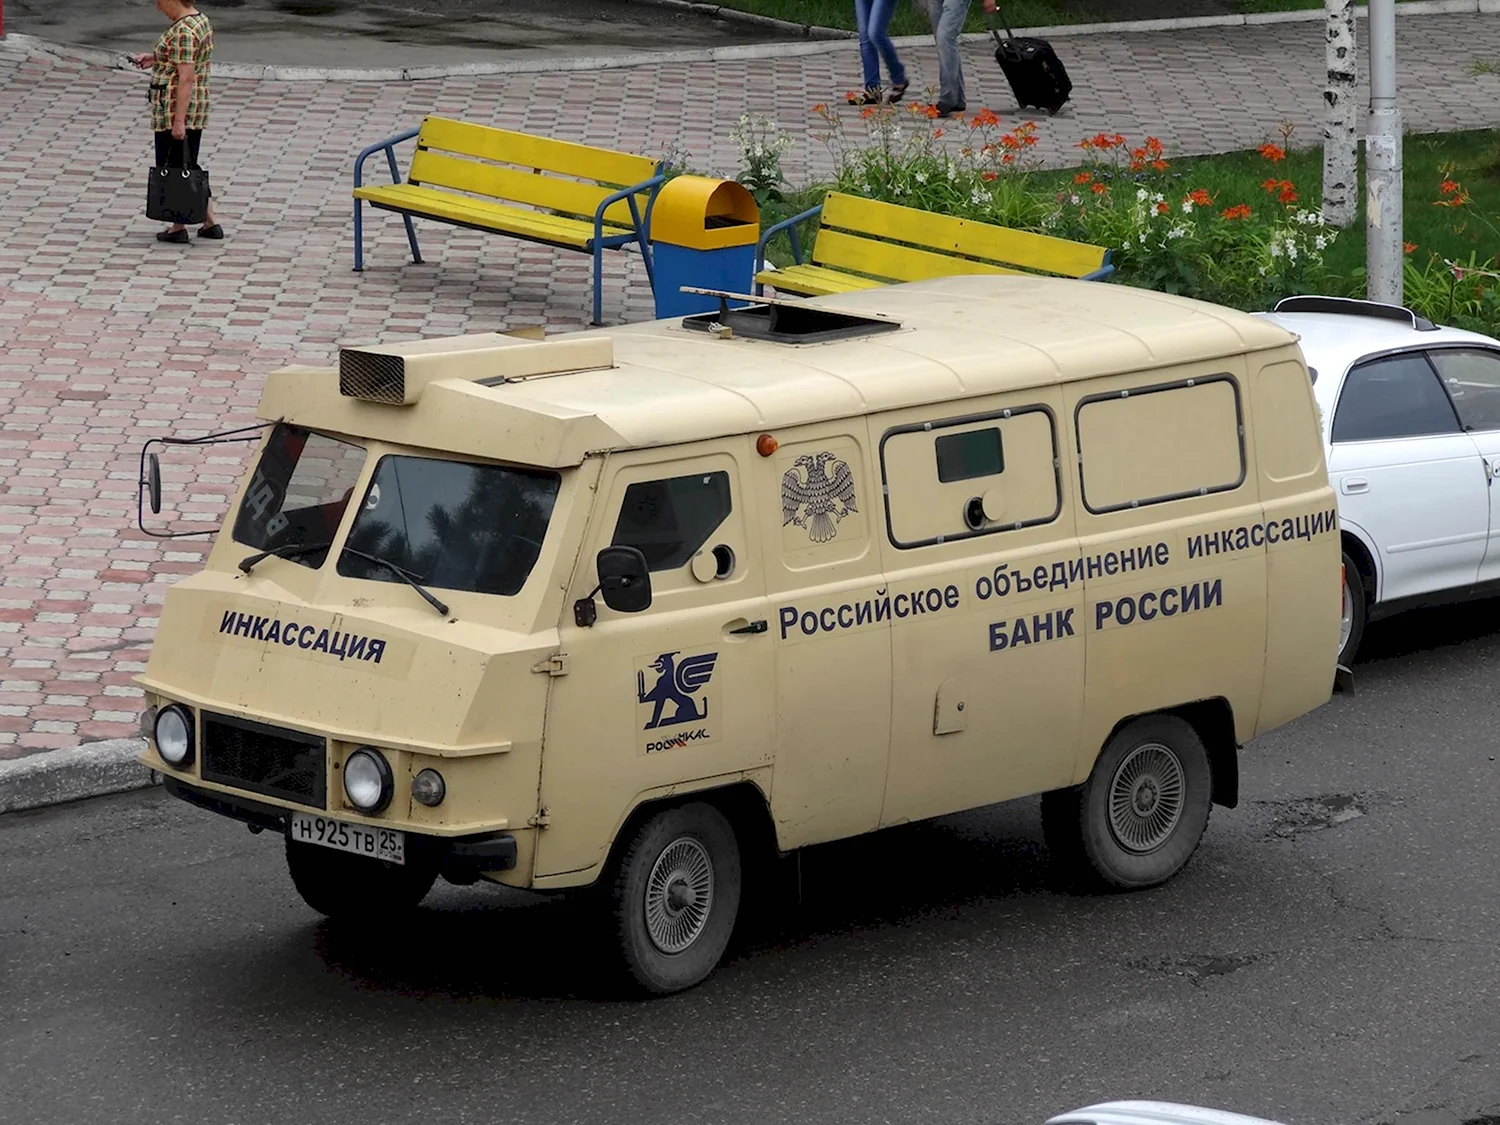 УАЗ Коналю-330 броневик